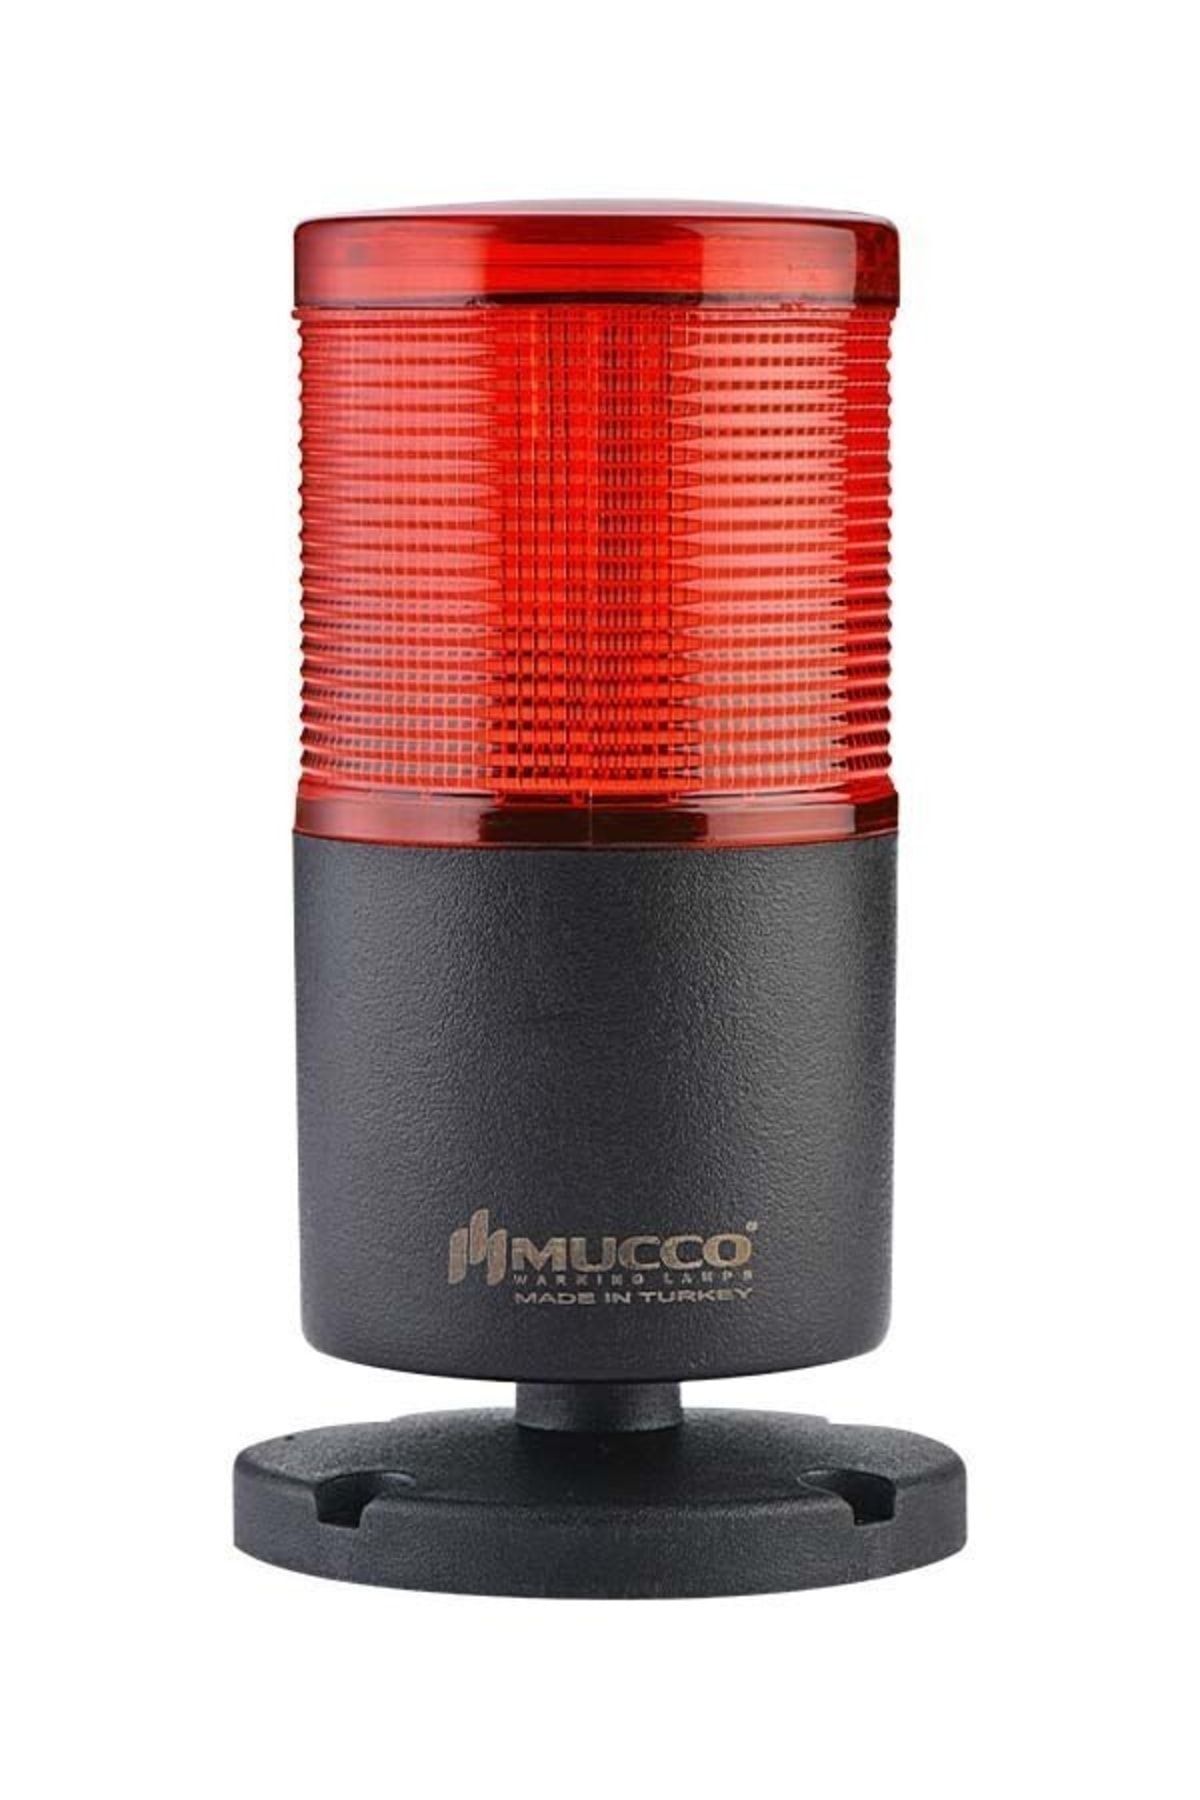 MUCCO 1 Katlı Flaşör - Buzzer Kolon Işık 24v Dc Snt-7024-fb1-kırmızı